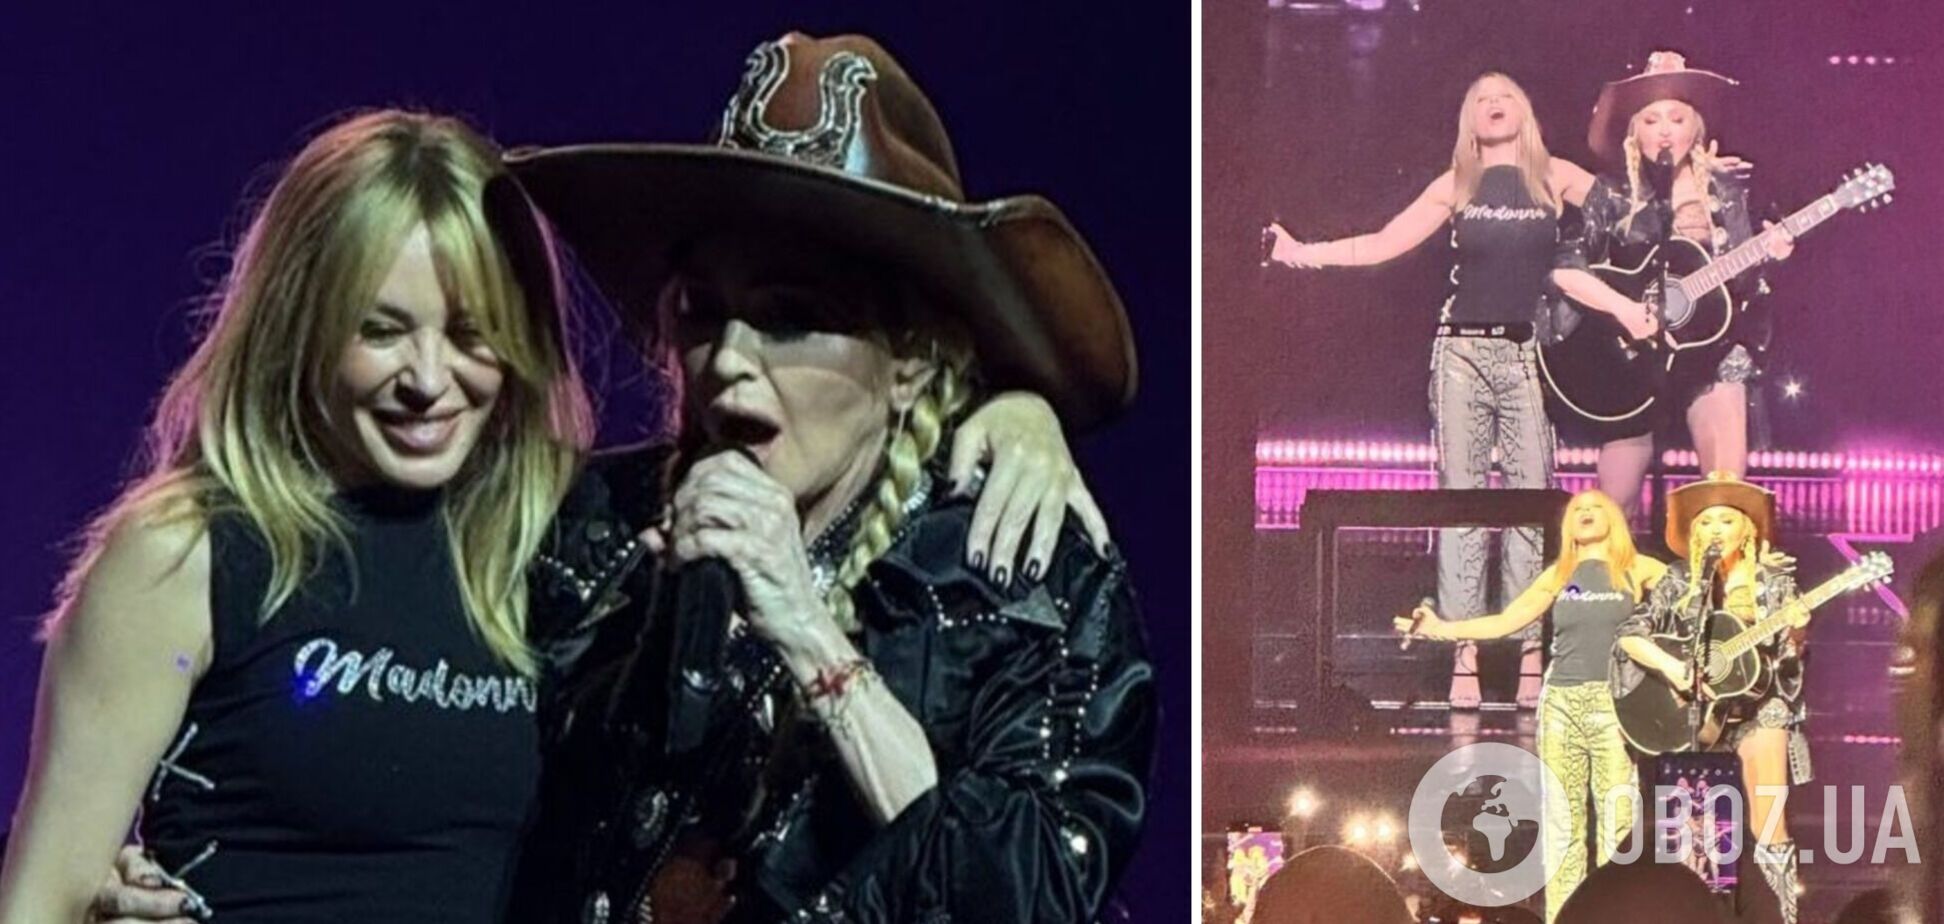 Мадонна и Кайли Миноуг к 8 Марта неожиданно спели дуэтом и удивили фанатов со всего мира. Видео